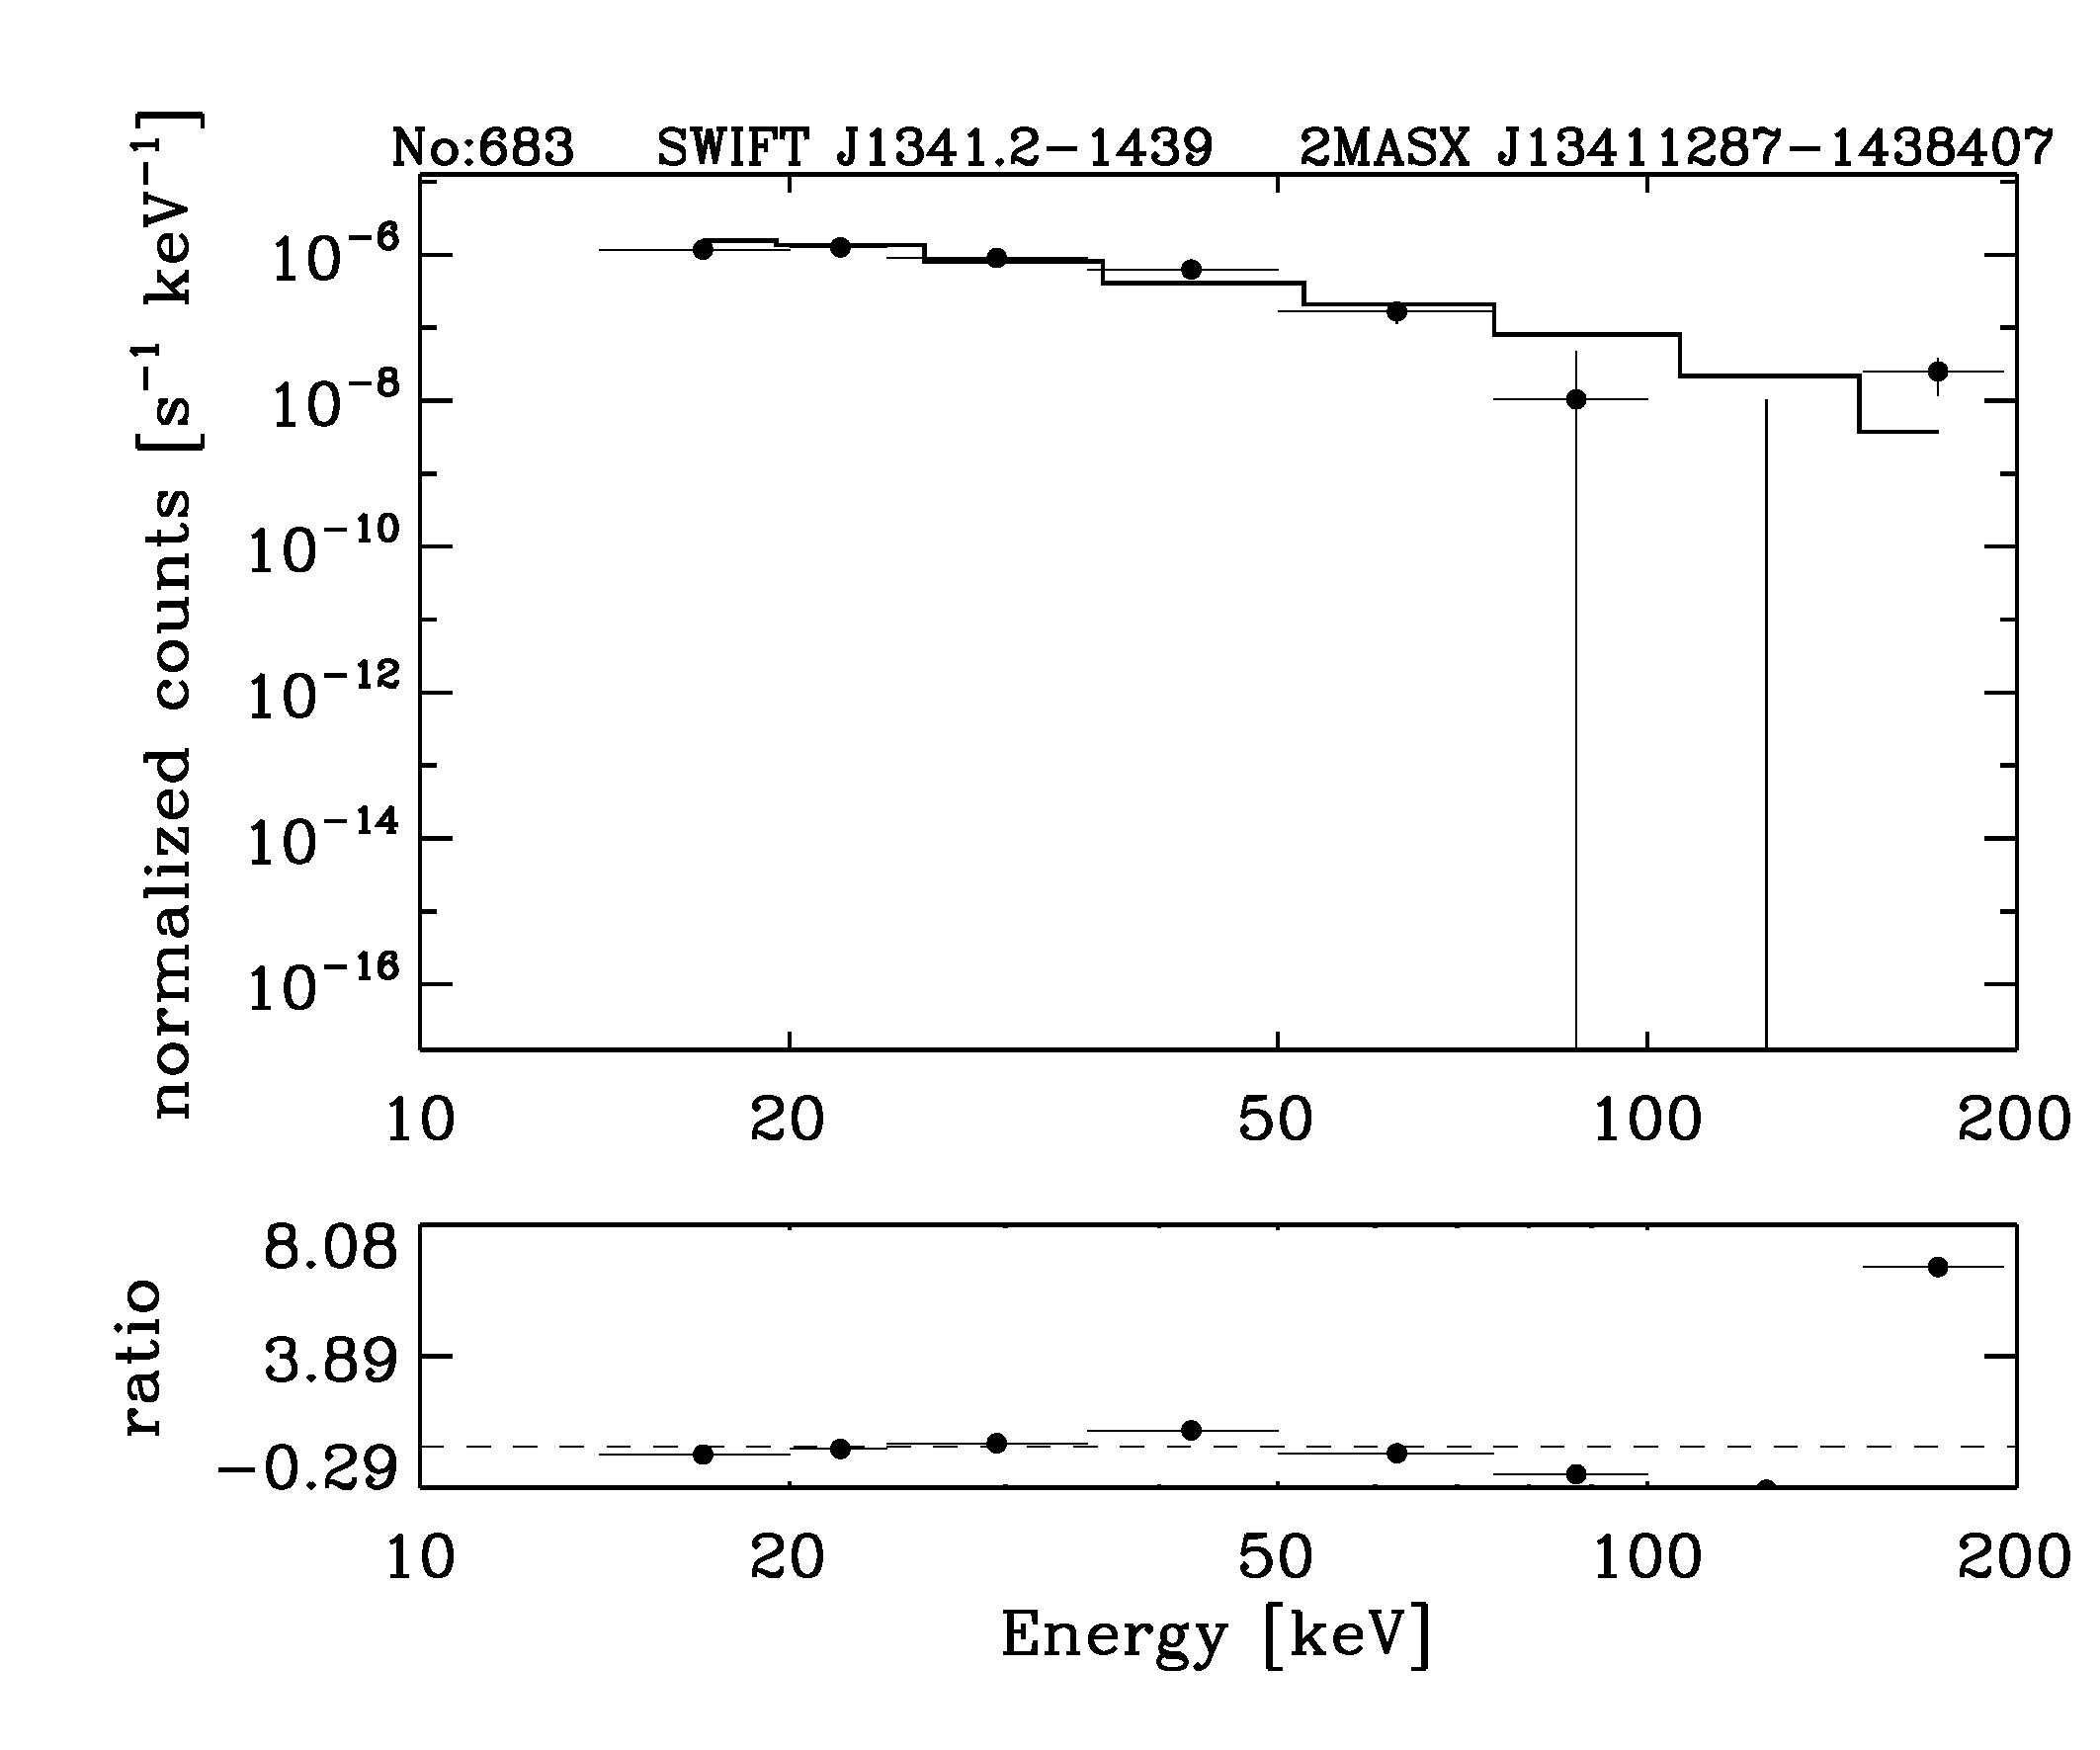 BAT Spectrum for SWIFT J1341.2-1439